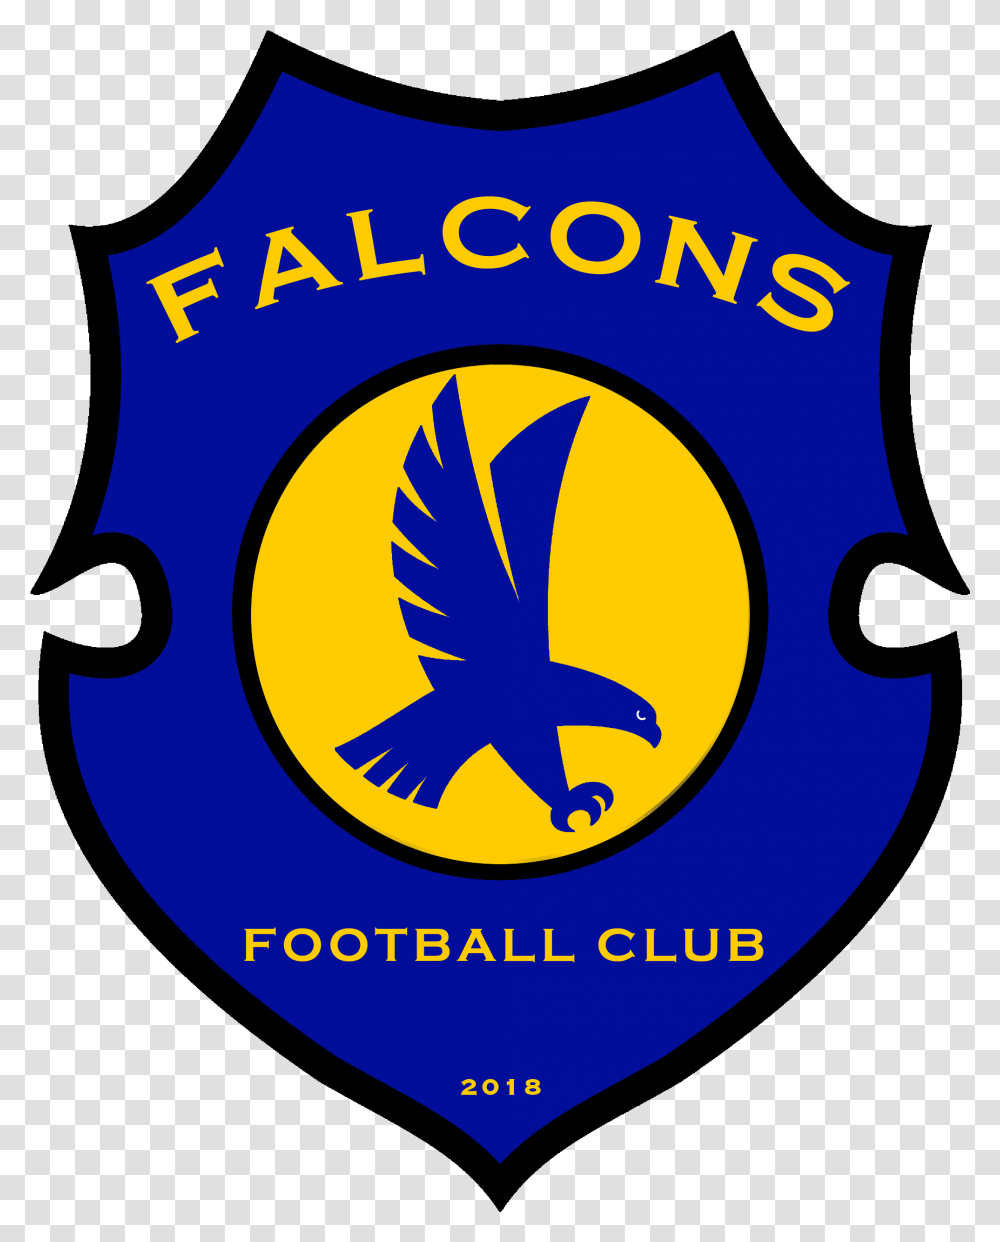 Falcons Fc Falcons Fc St Philip Falcon, Logo, Trademark, Emblem Transparent Png